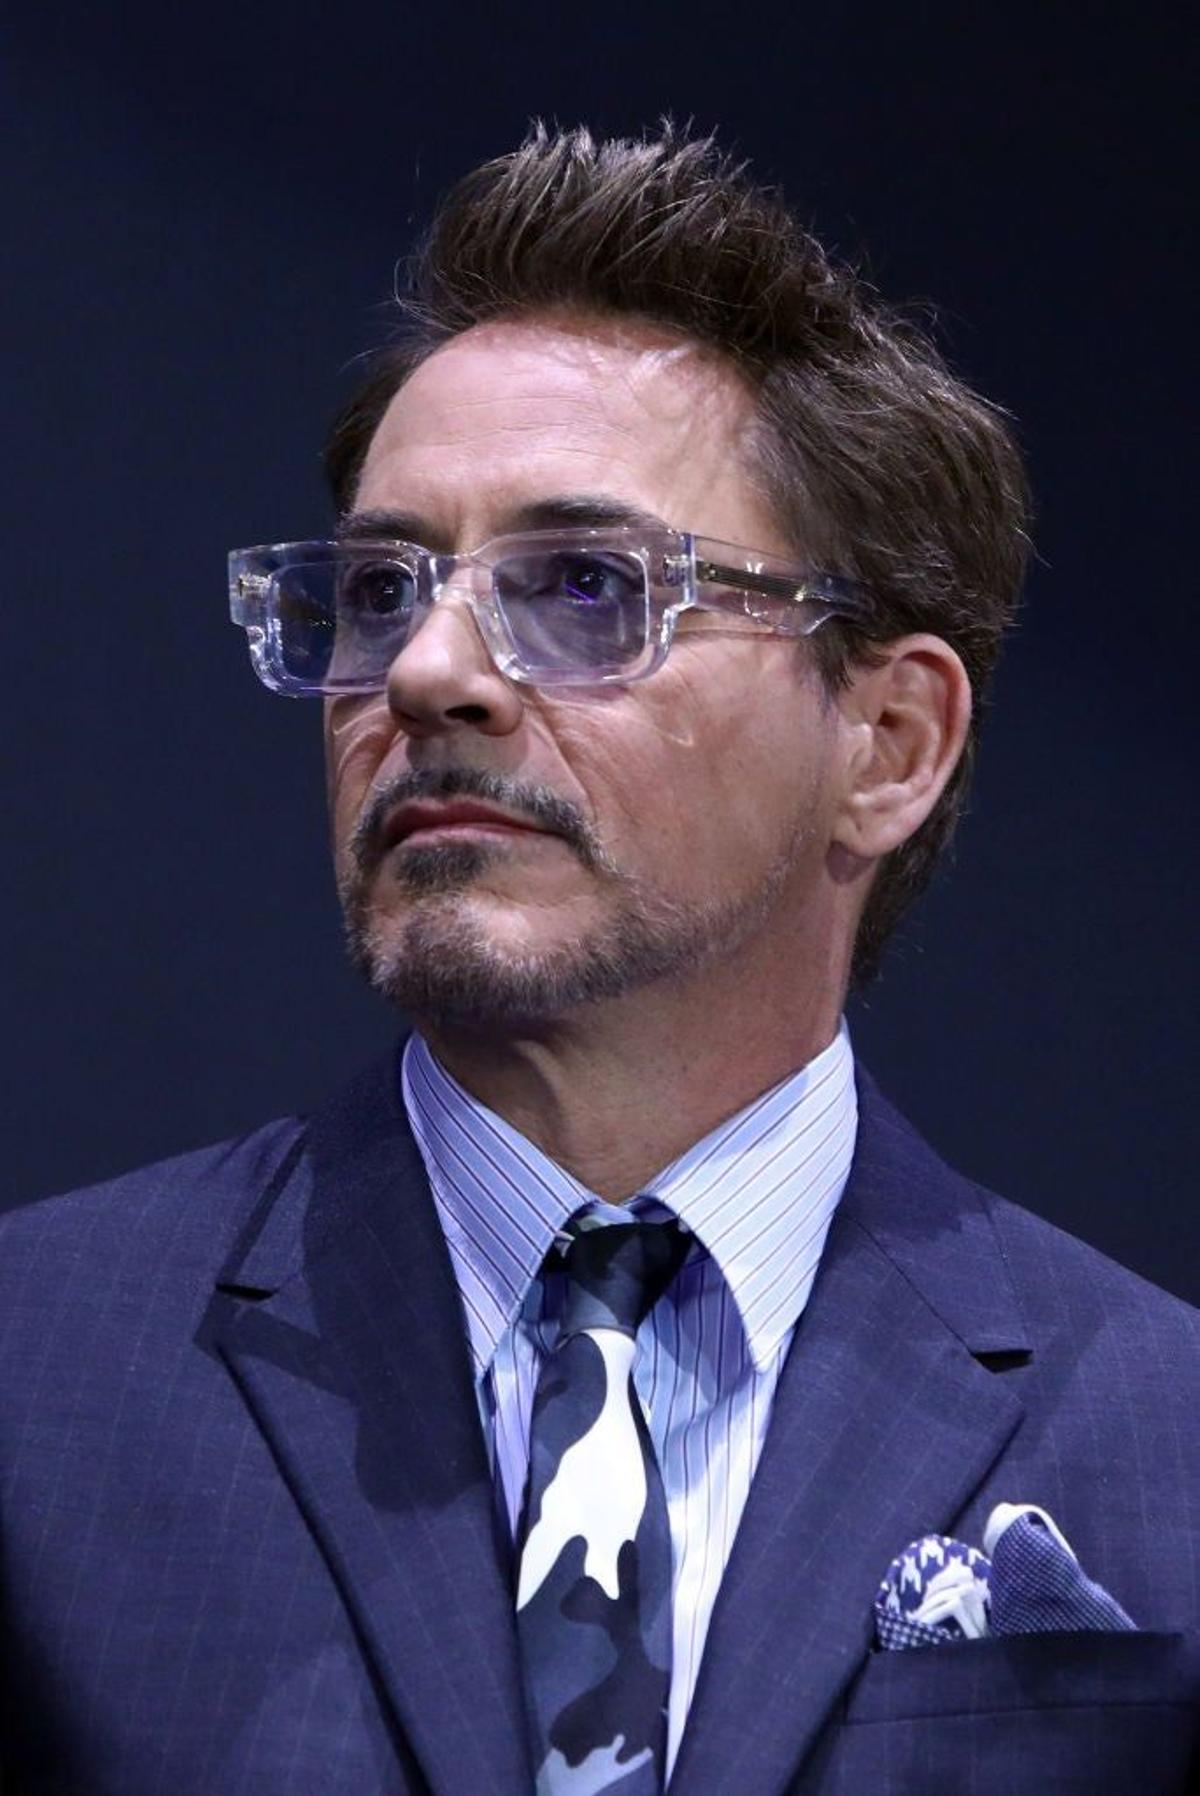 3. Robert Downey Jr